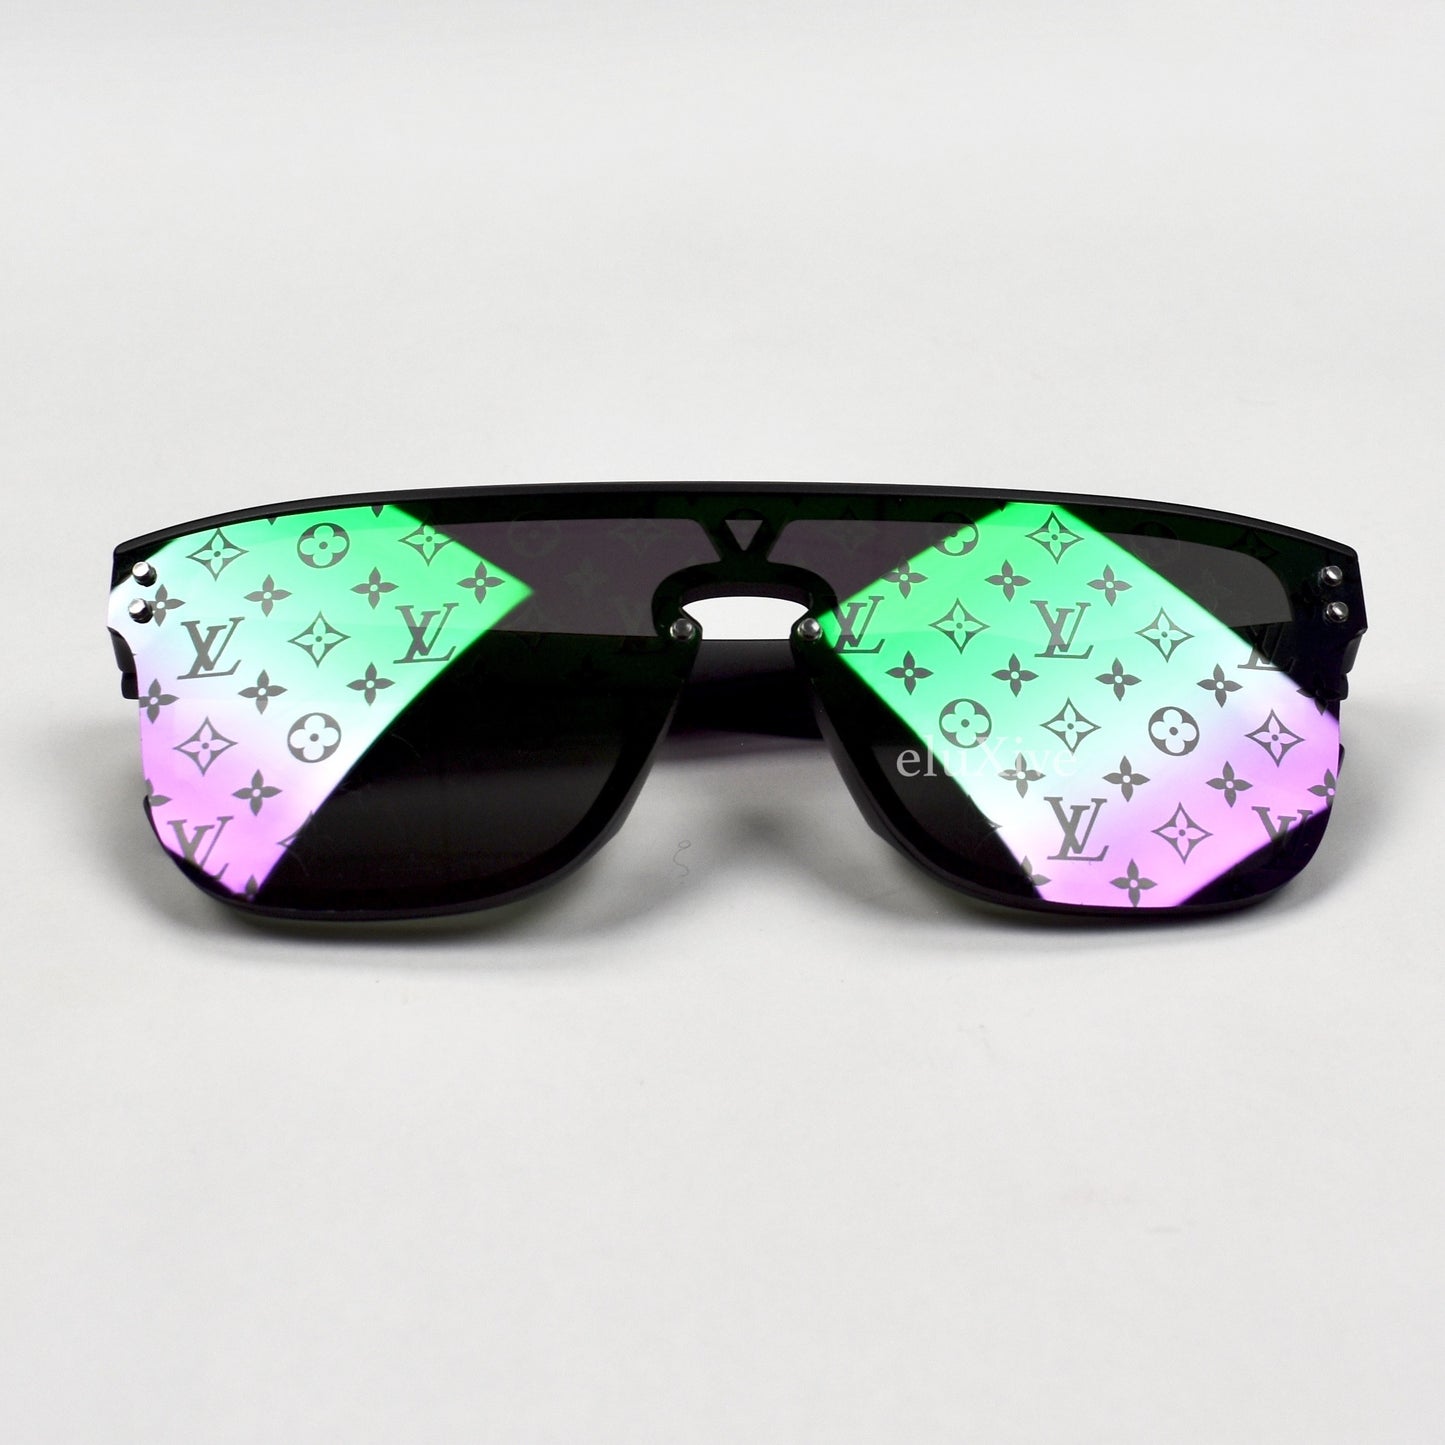 lv waimea sunglasses cheap